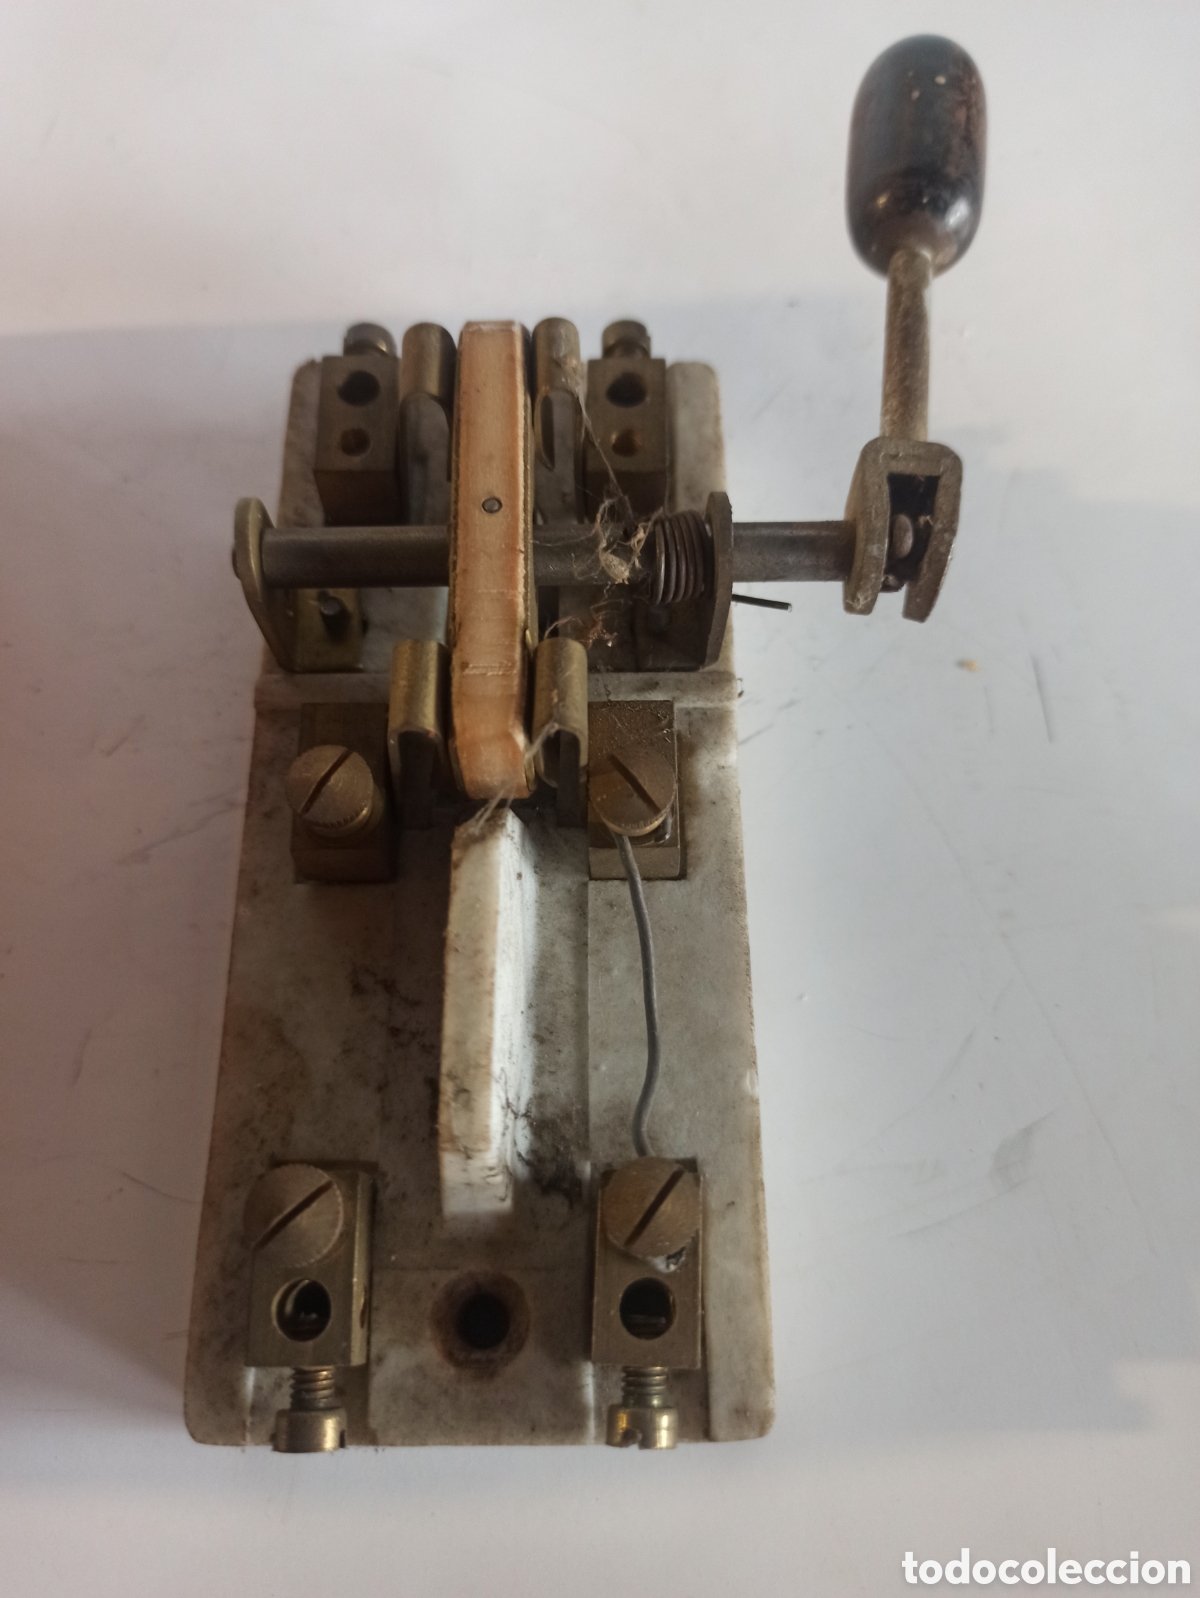 antiguo interruptor coche clasico - Compra venta en todocoleccion